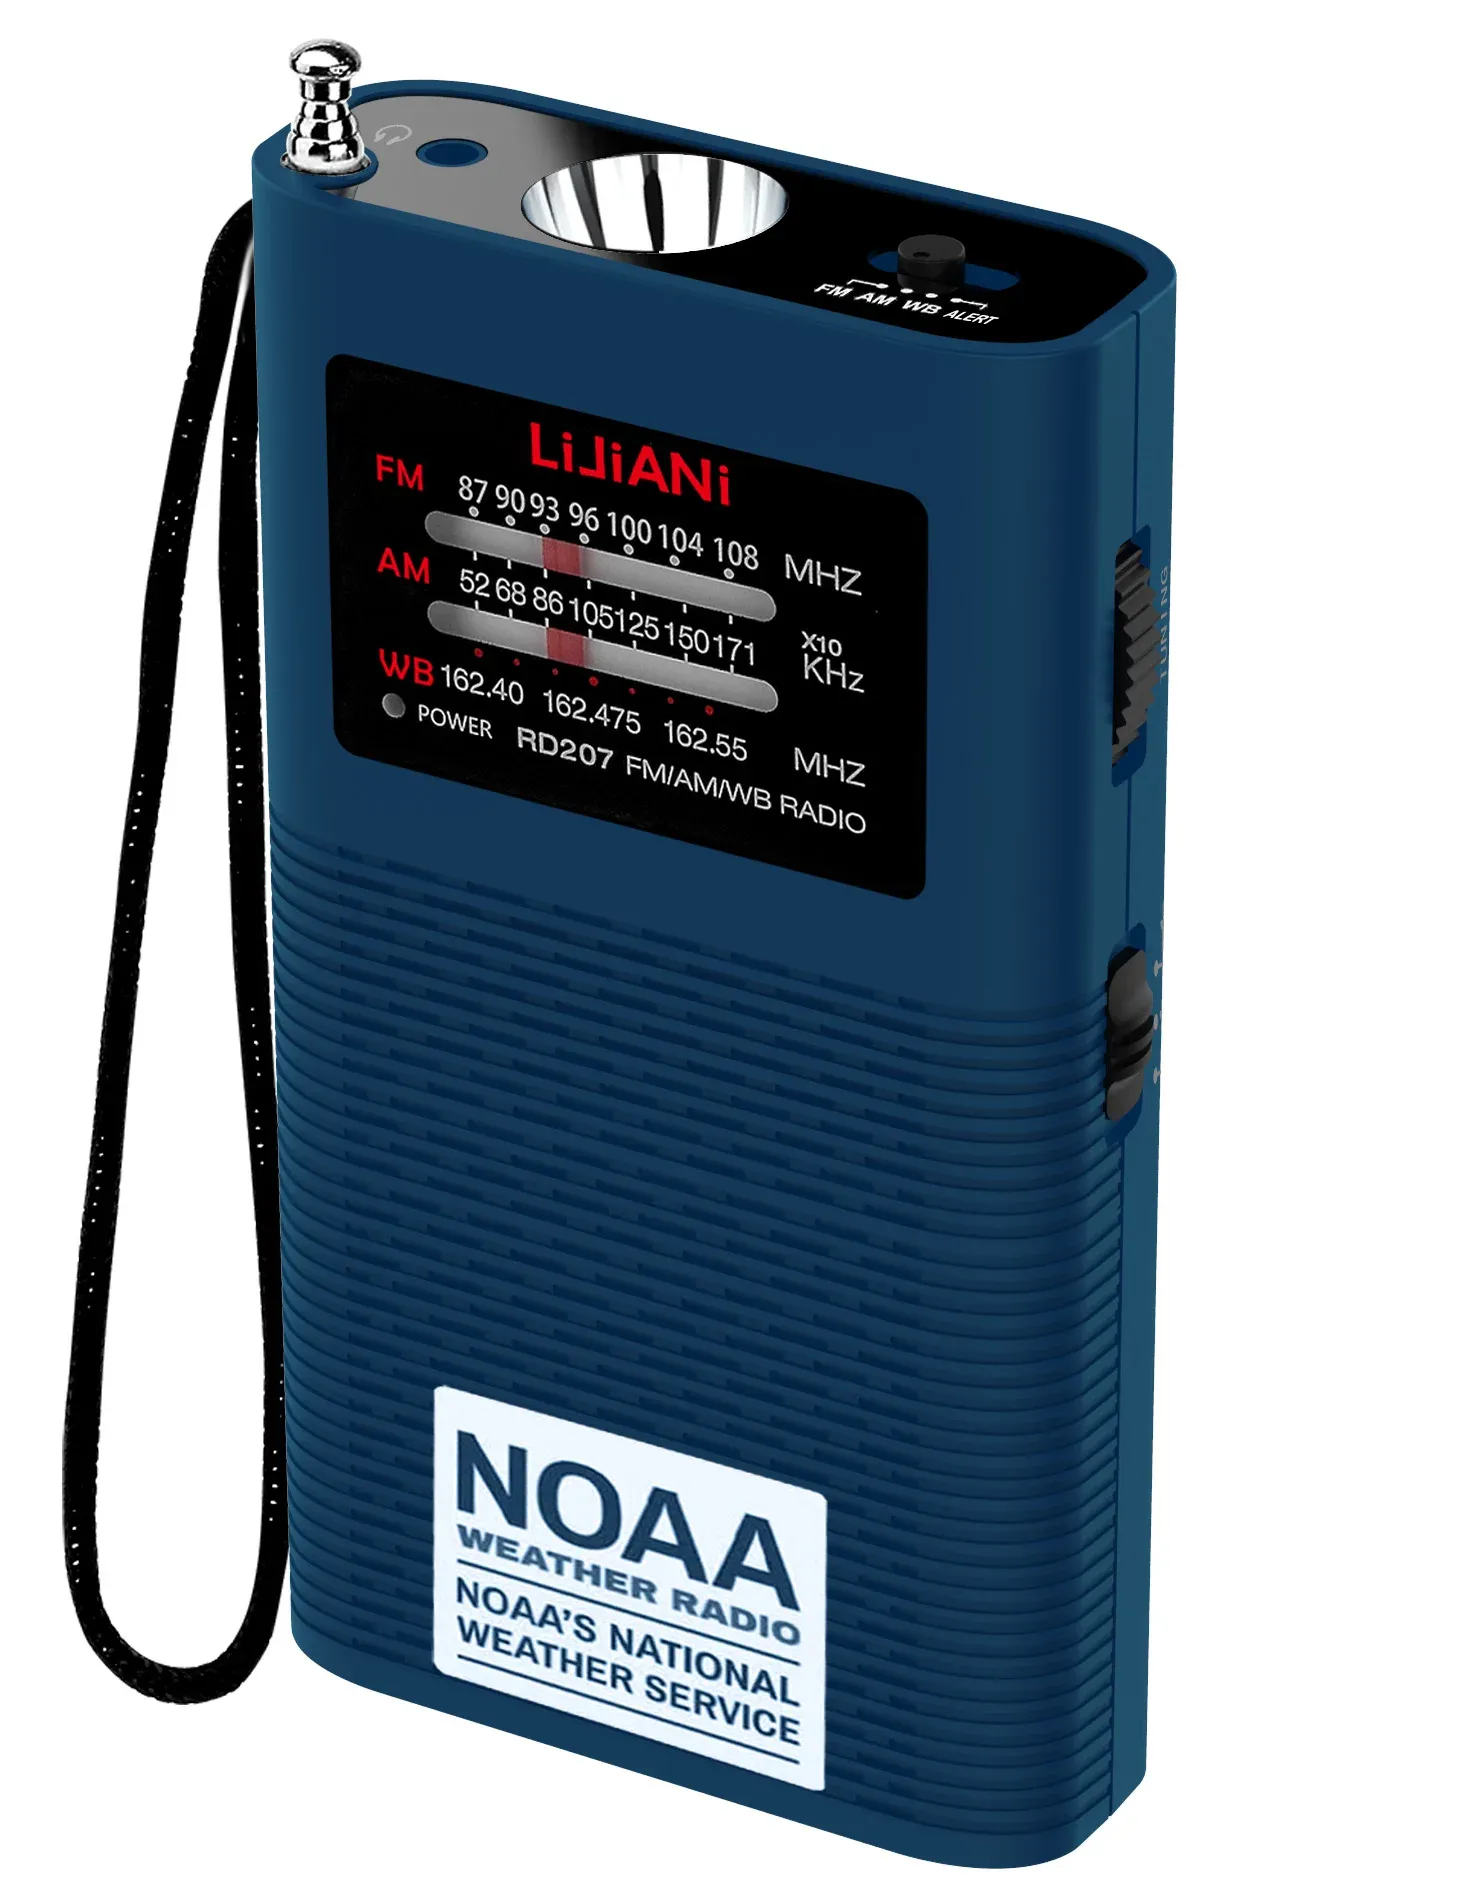 Radio NOAA Weather Radio Portable AM FM Transistor Fonctionnant sur batterie de 1500 MAH (incluse) avec un flash puissant Version américaine uniquement.